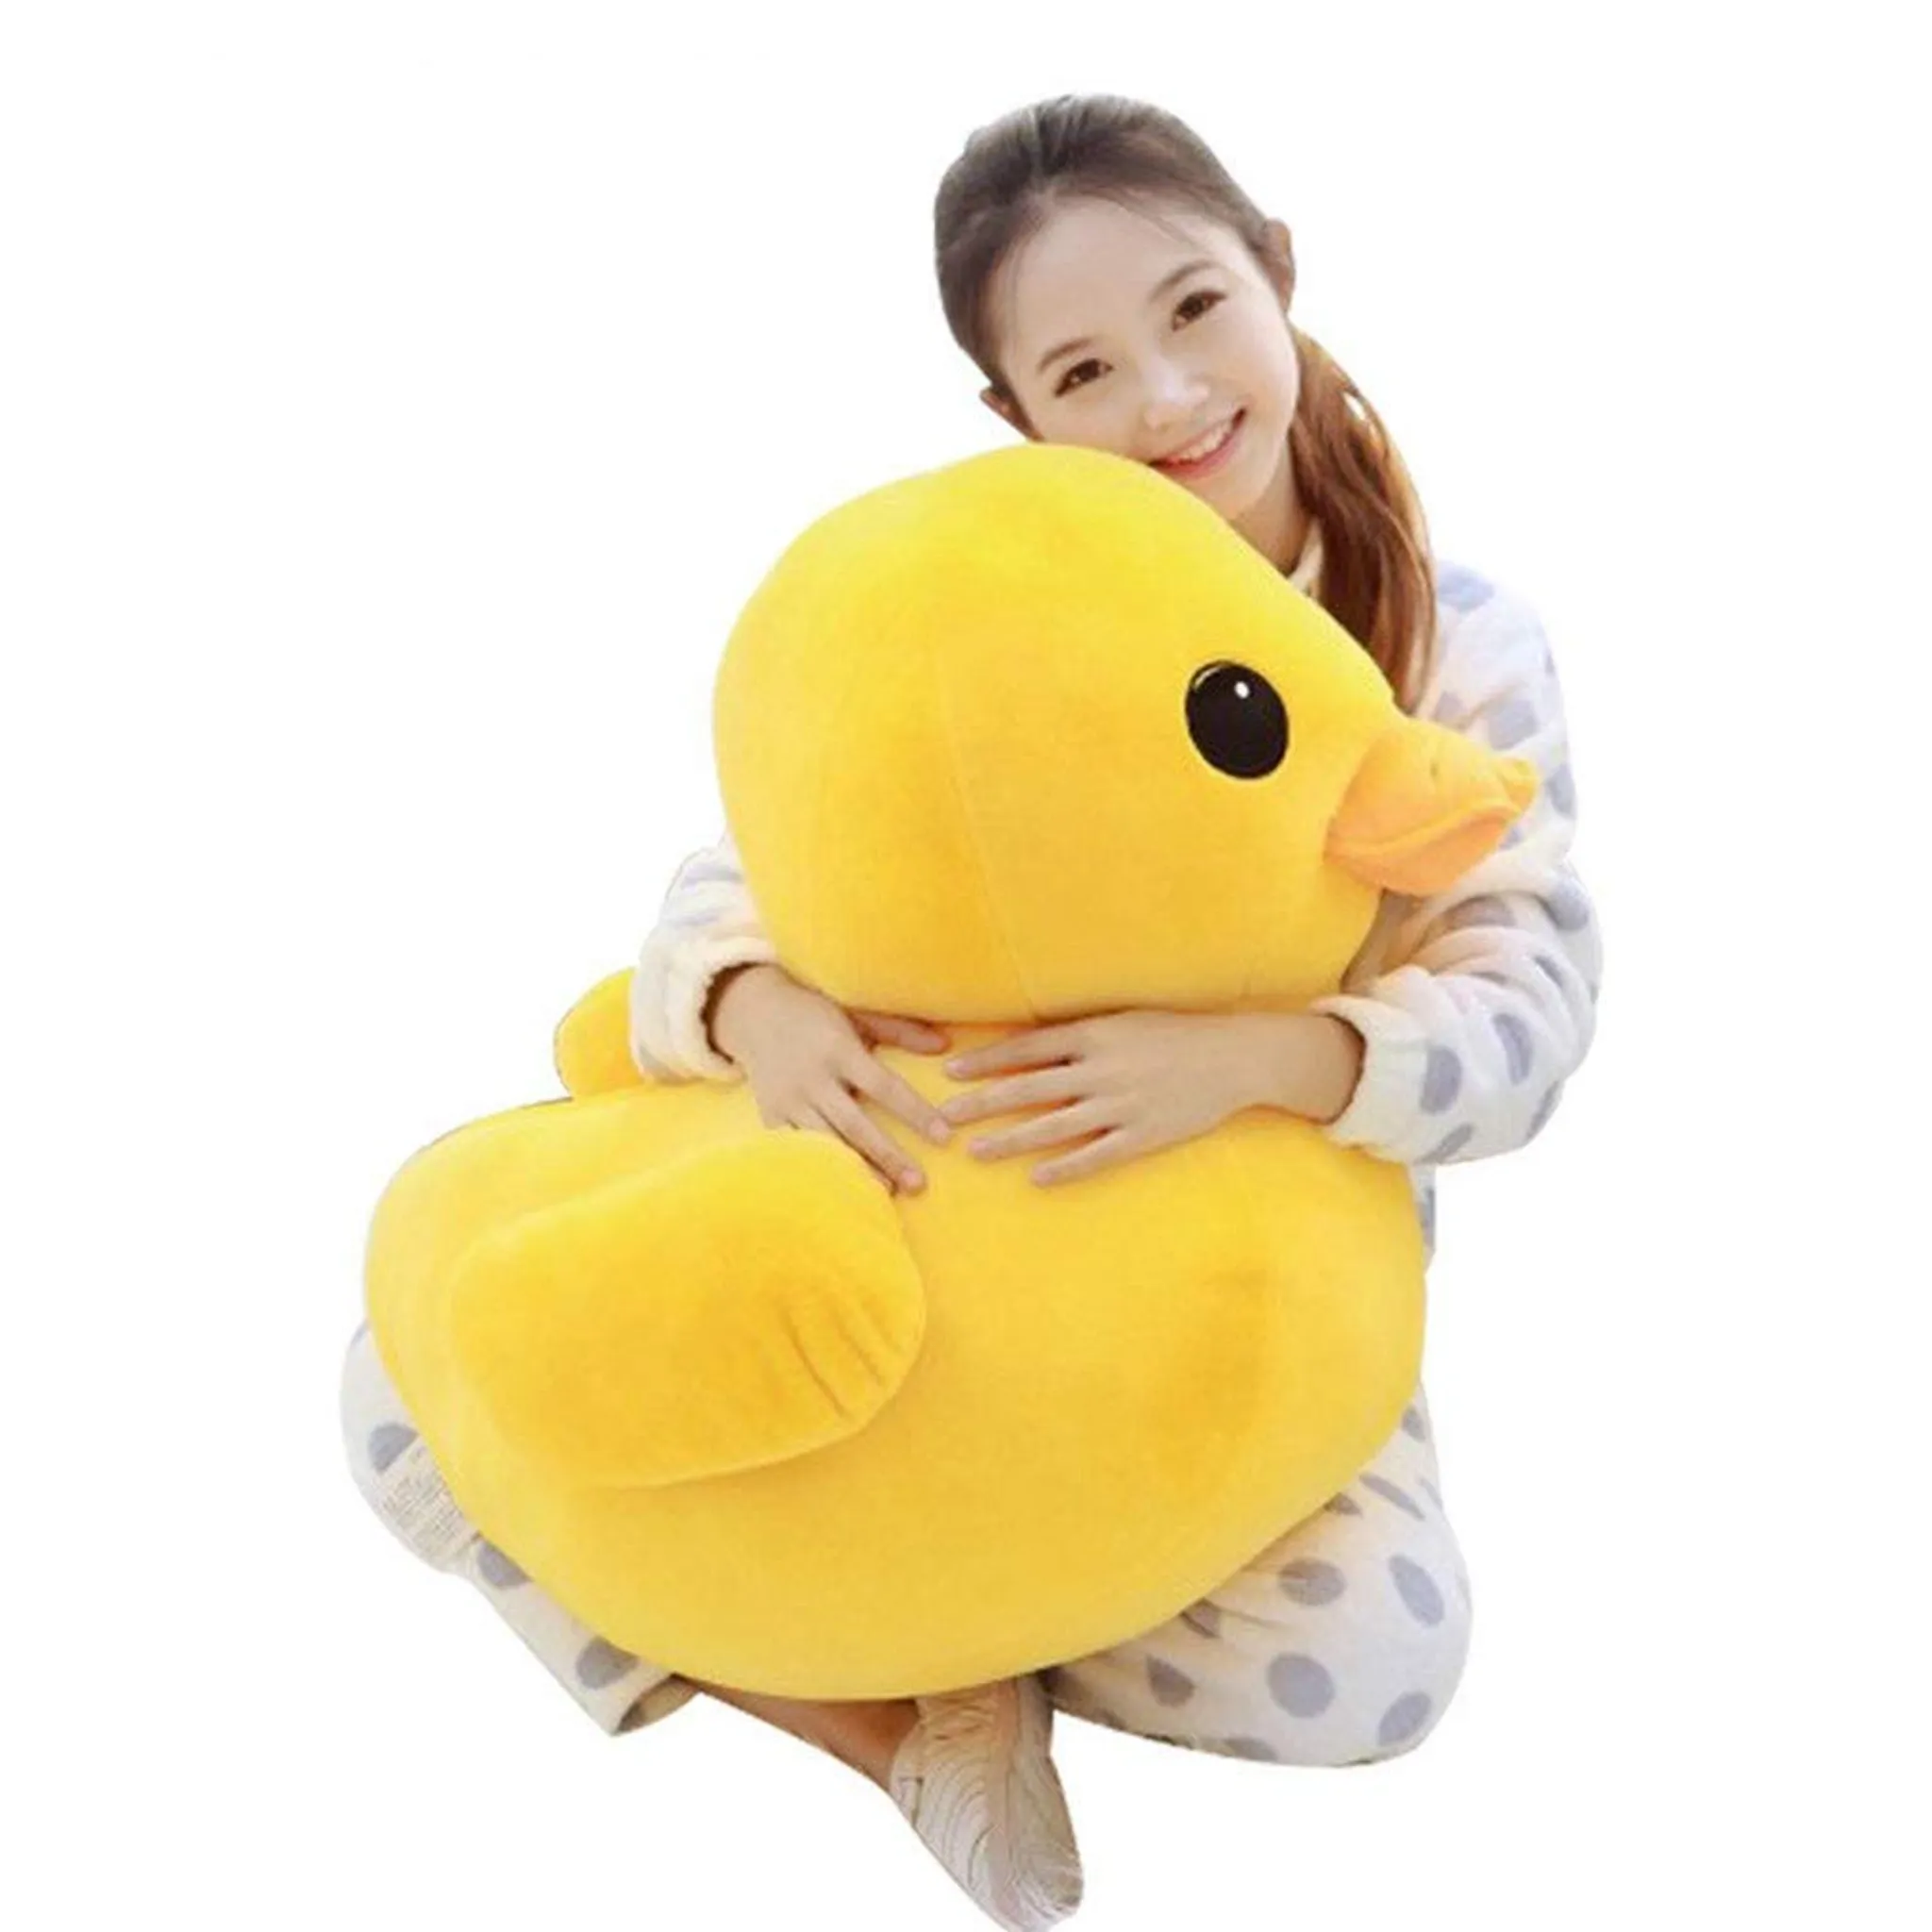 Plüsch Ente XXL 80cm - Duck Plüschtier, die Geschenkidee für Kind